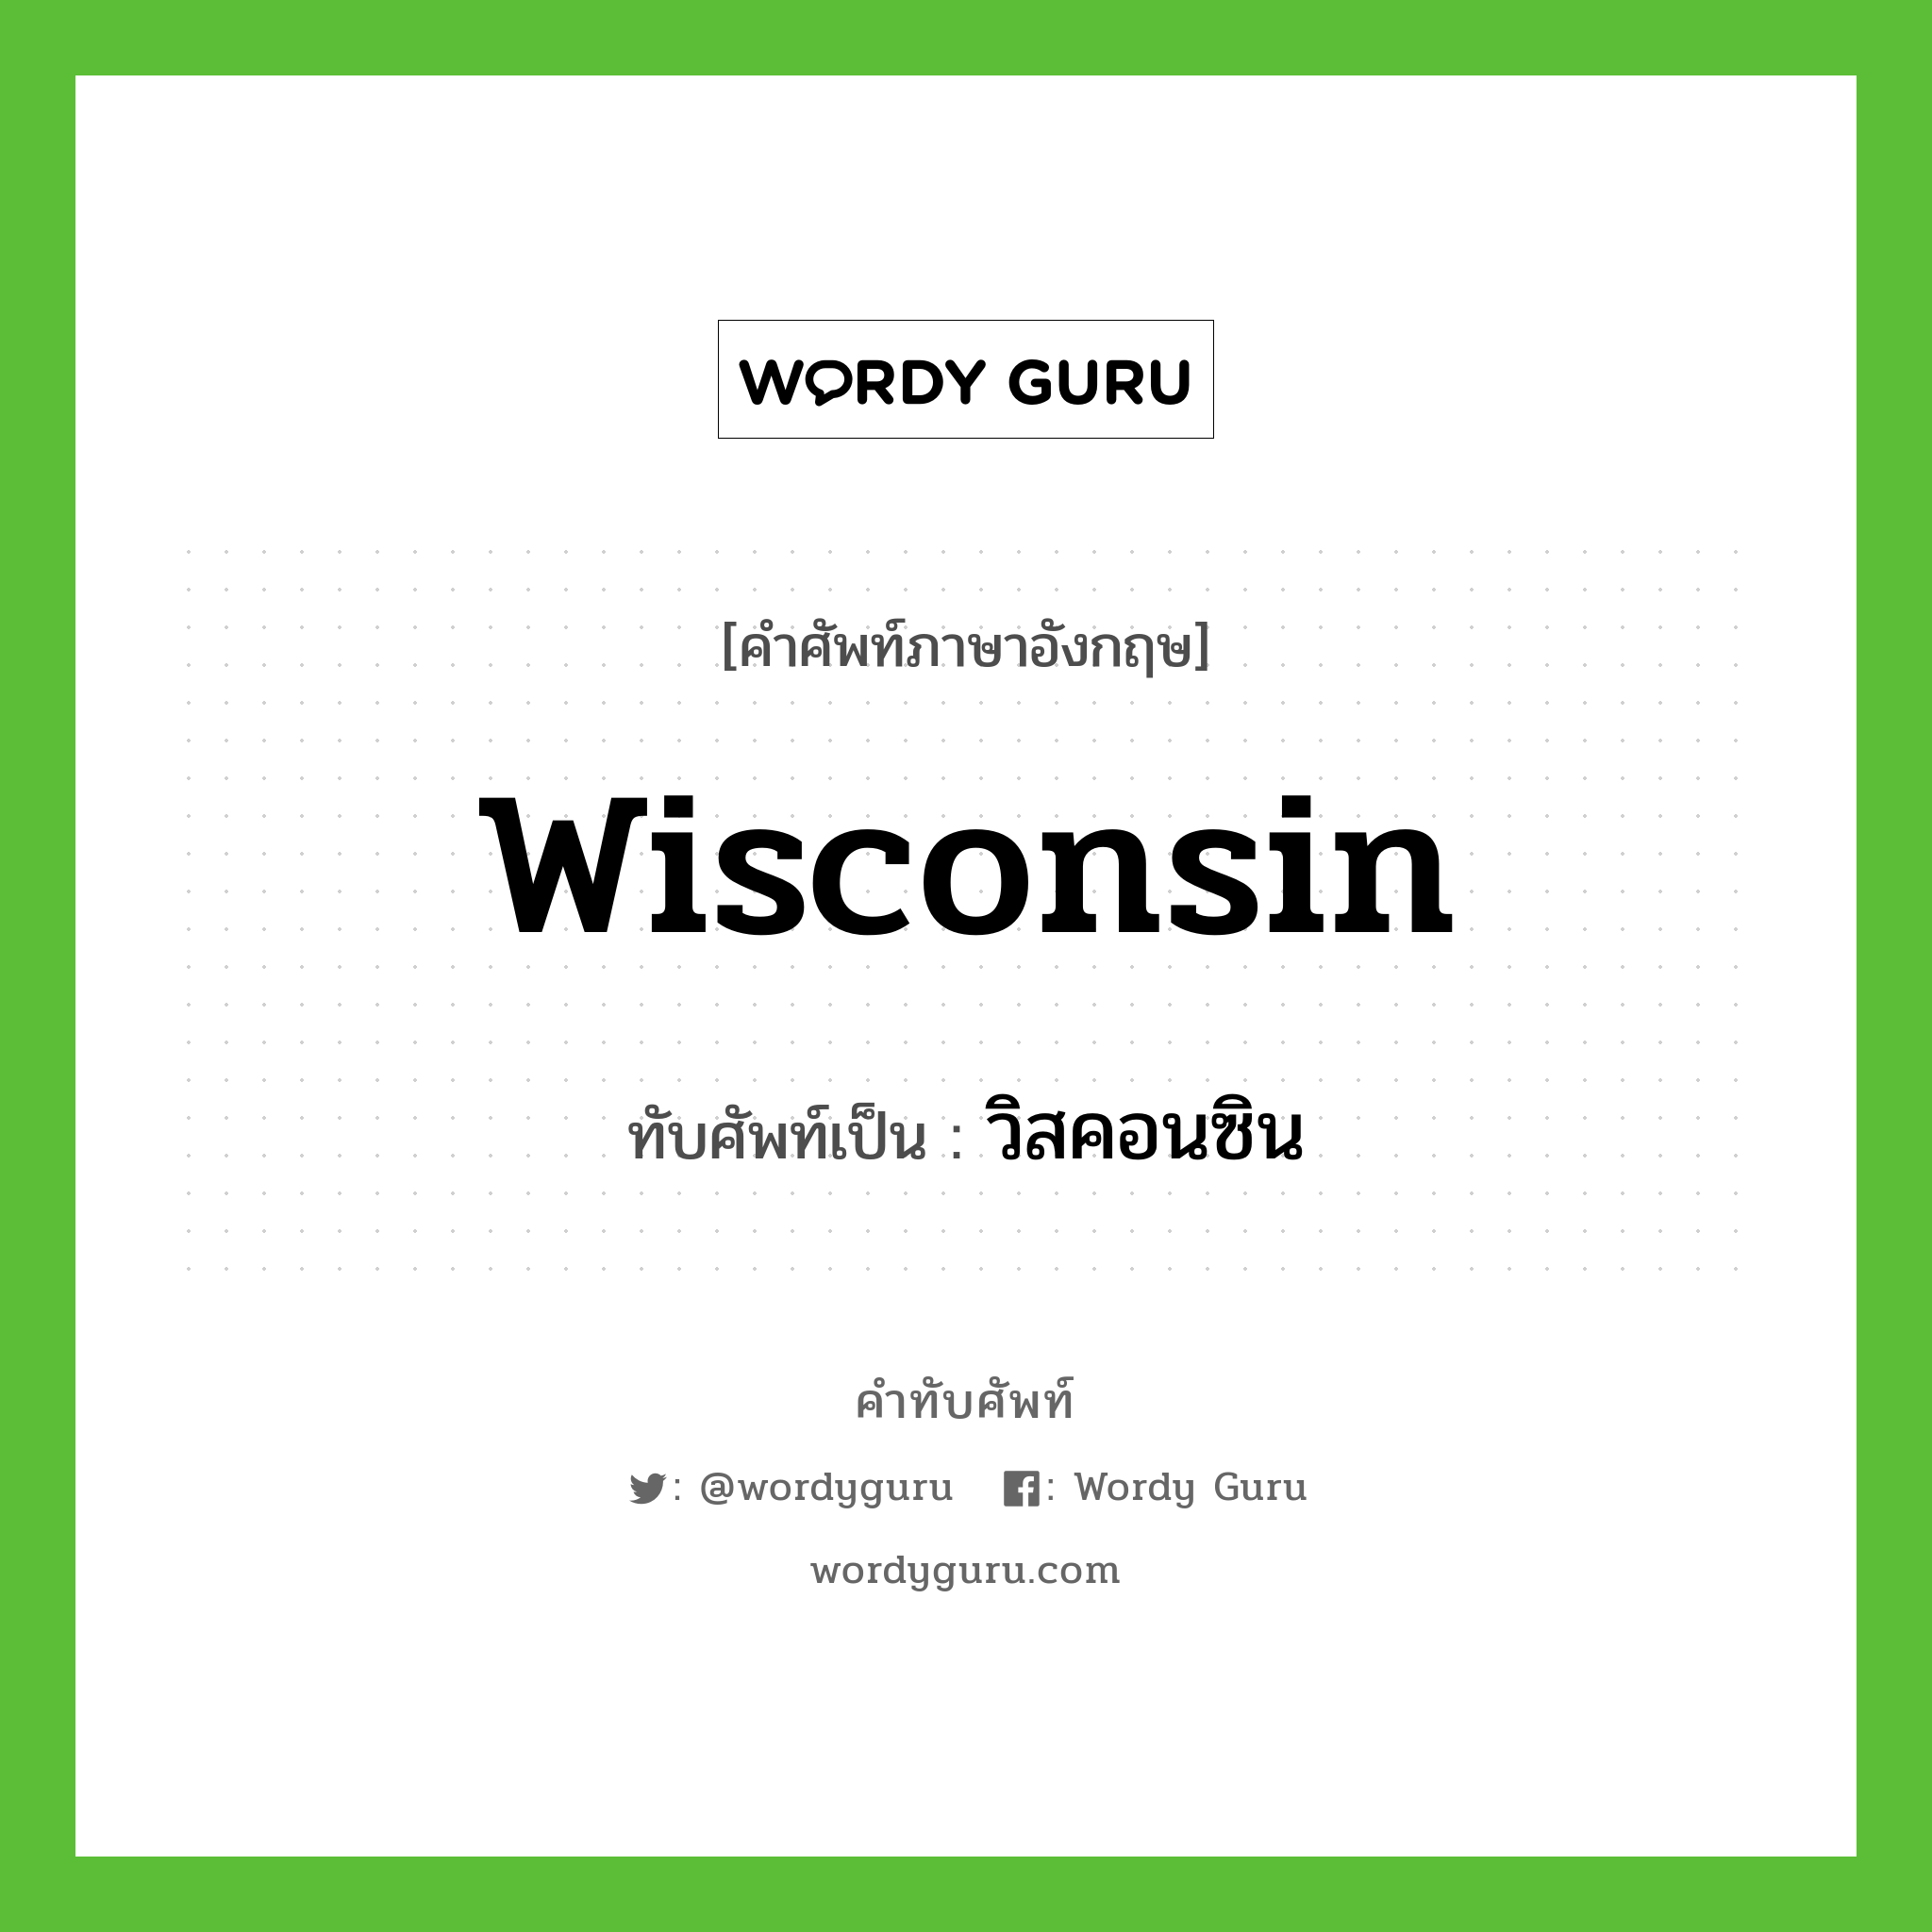 วิสคอนซิน เขียนอย่างไร?, คำศัพท์ภาษาอังกฤษ วิสคอนซิน ทับศัพท์เป็น Wisconsin